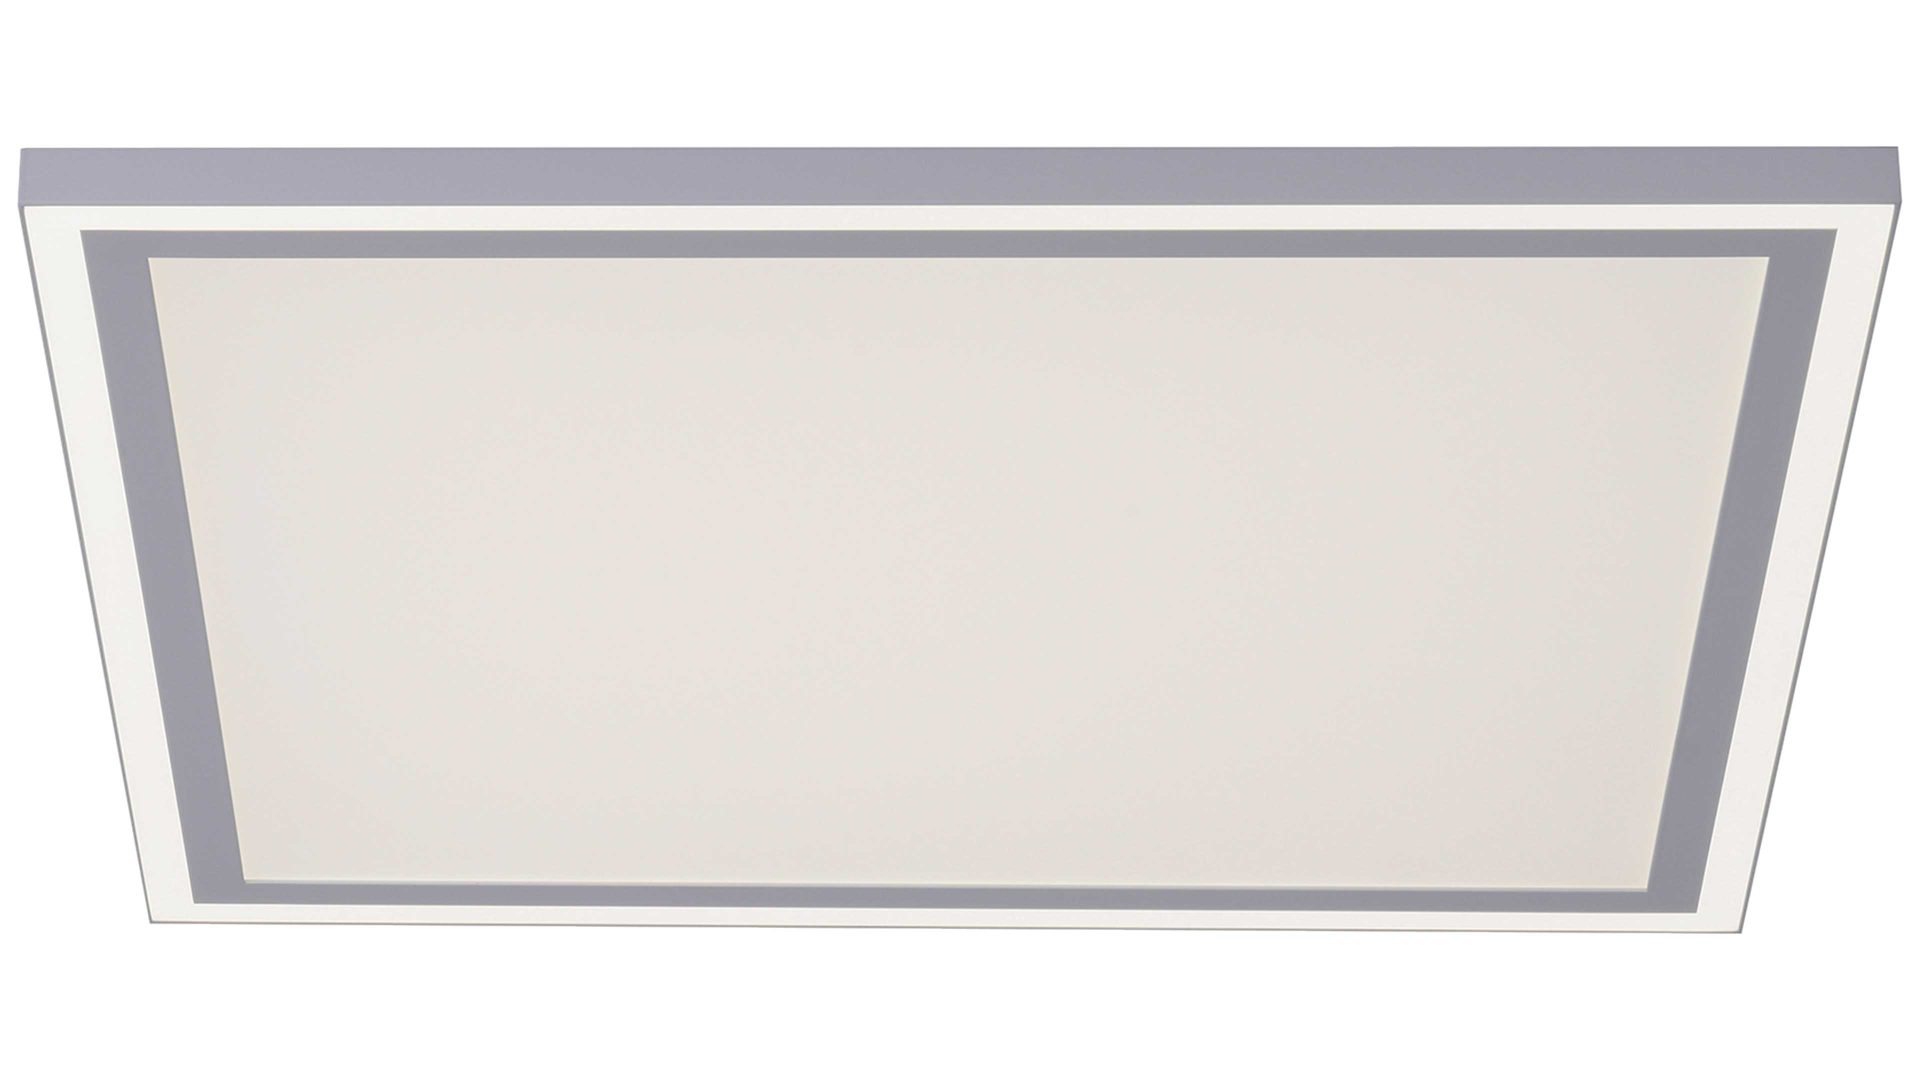 Deckenleuchte Just light. (leuchtendirekt) aus Metall in Weiß JUST LIGHT. Lampenserie Edging - Deckenlampe weißes Metall - ca. 68 x 68 cm